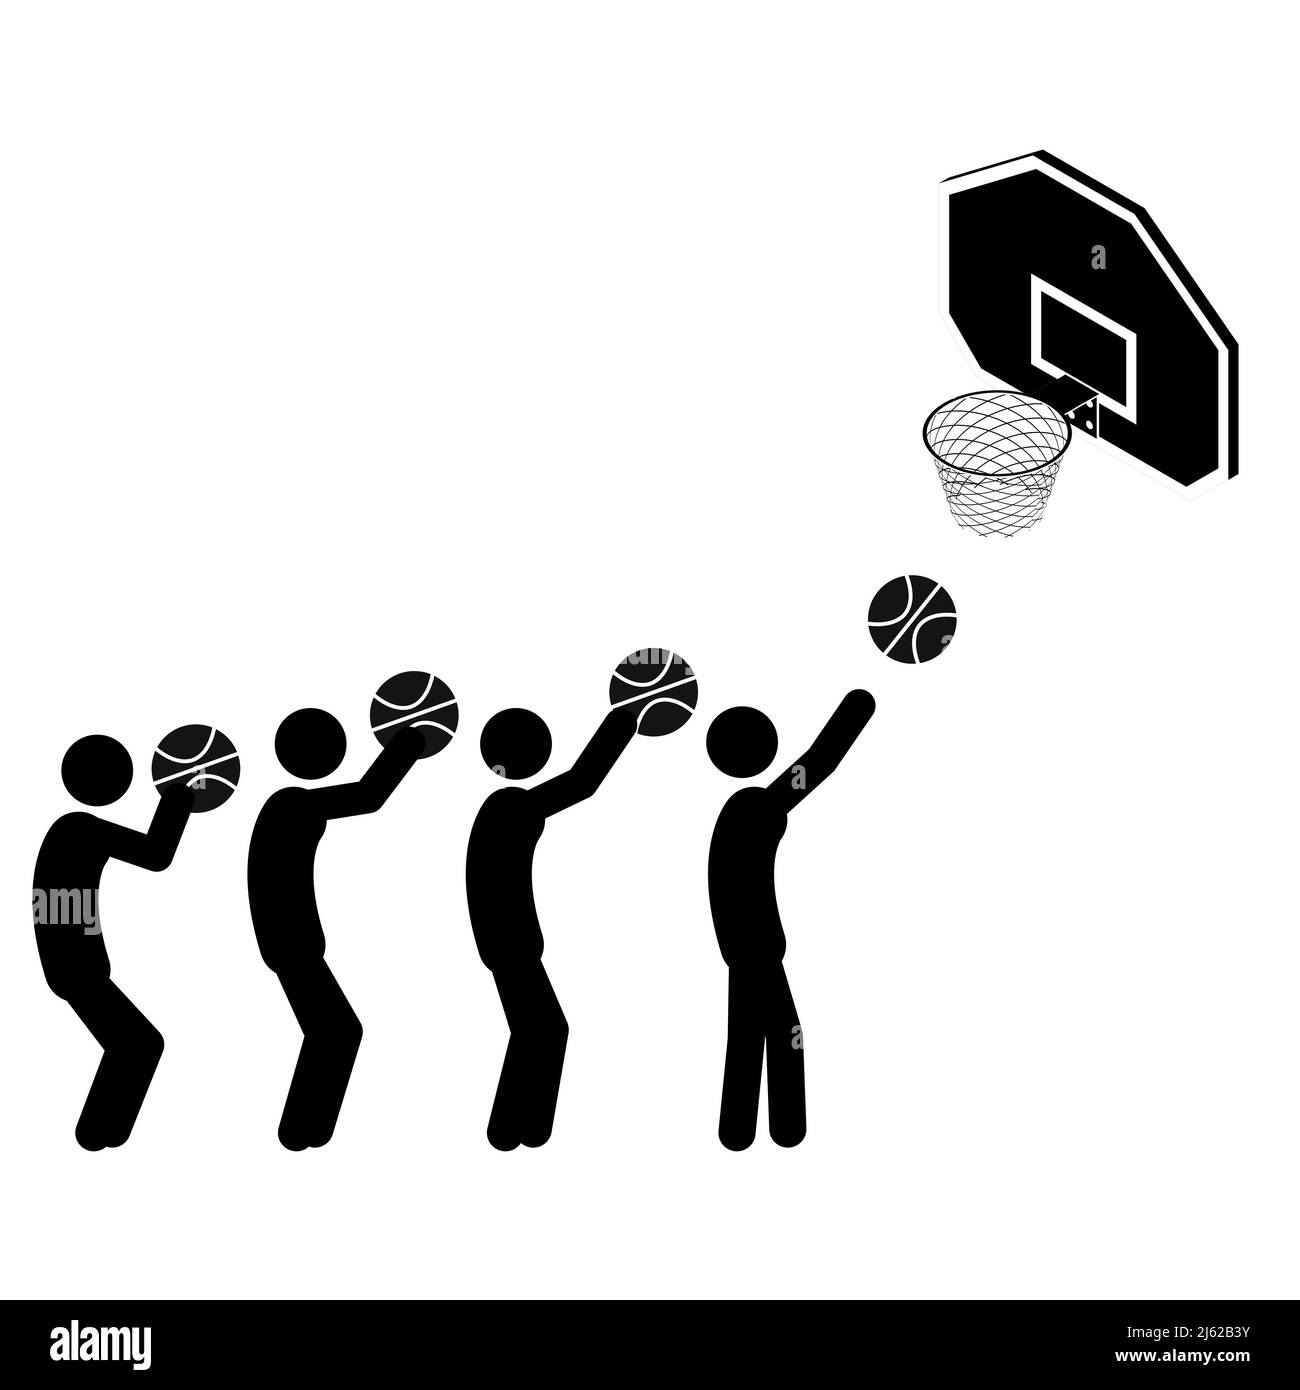 Jeu de figurines jouant au basket-ball sur fond blanc. Style plat, illustration vectorielle. Illustration de Vecteur